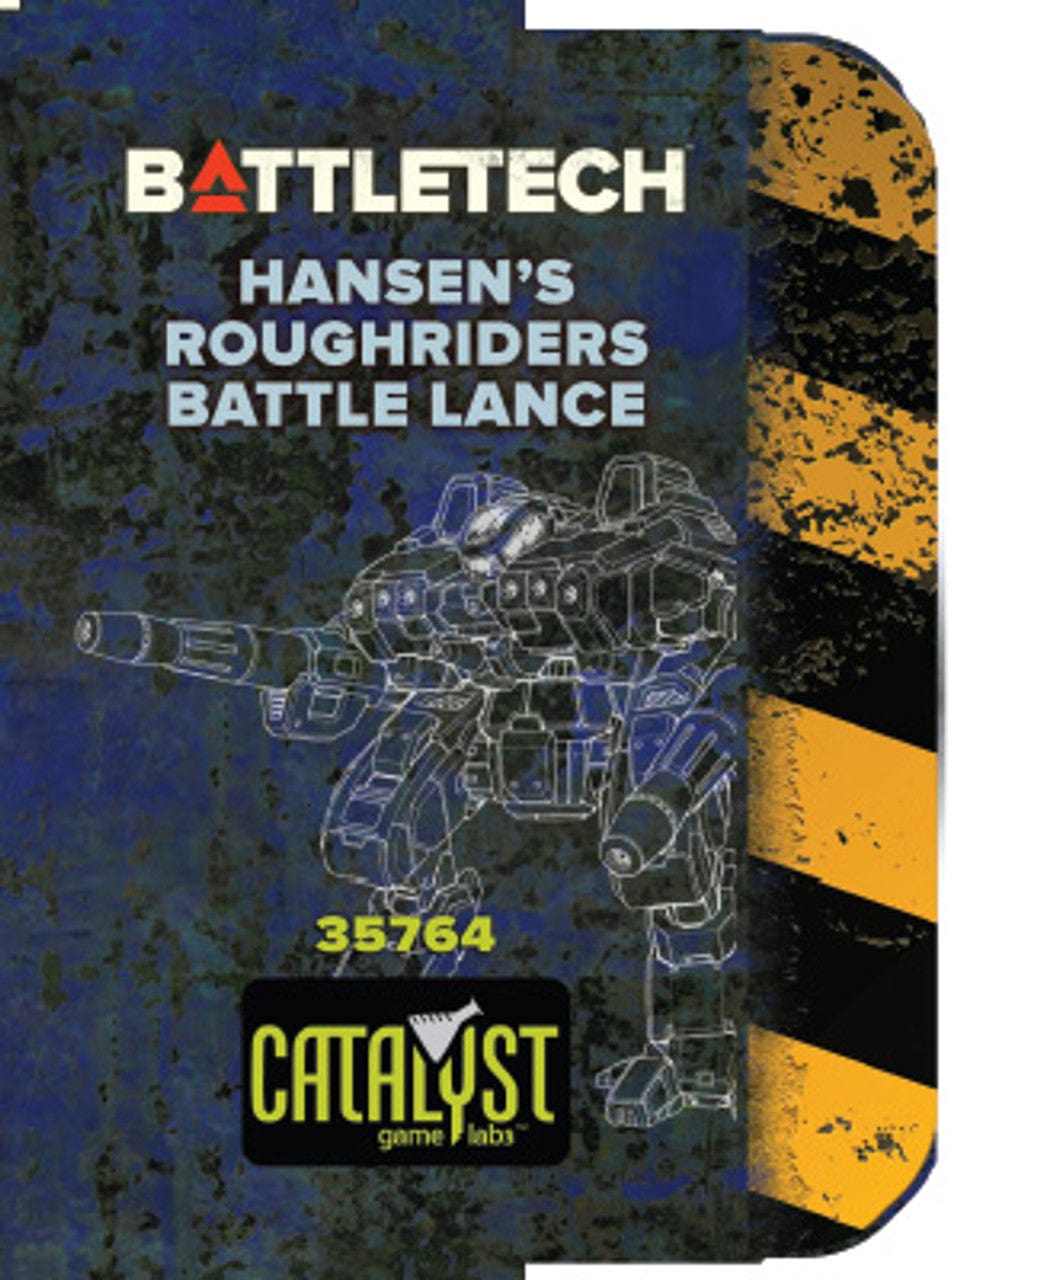 BattleTech: Miniature Force Pack - Hansens Roughriders Battle Lance - Third Eye